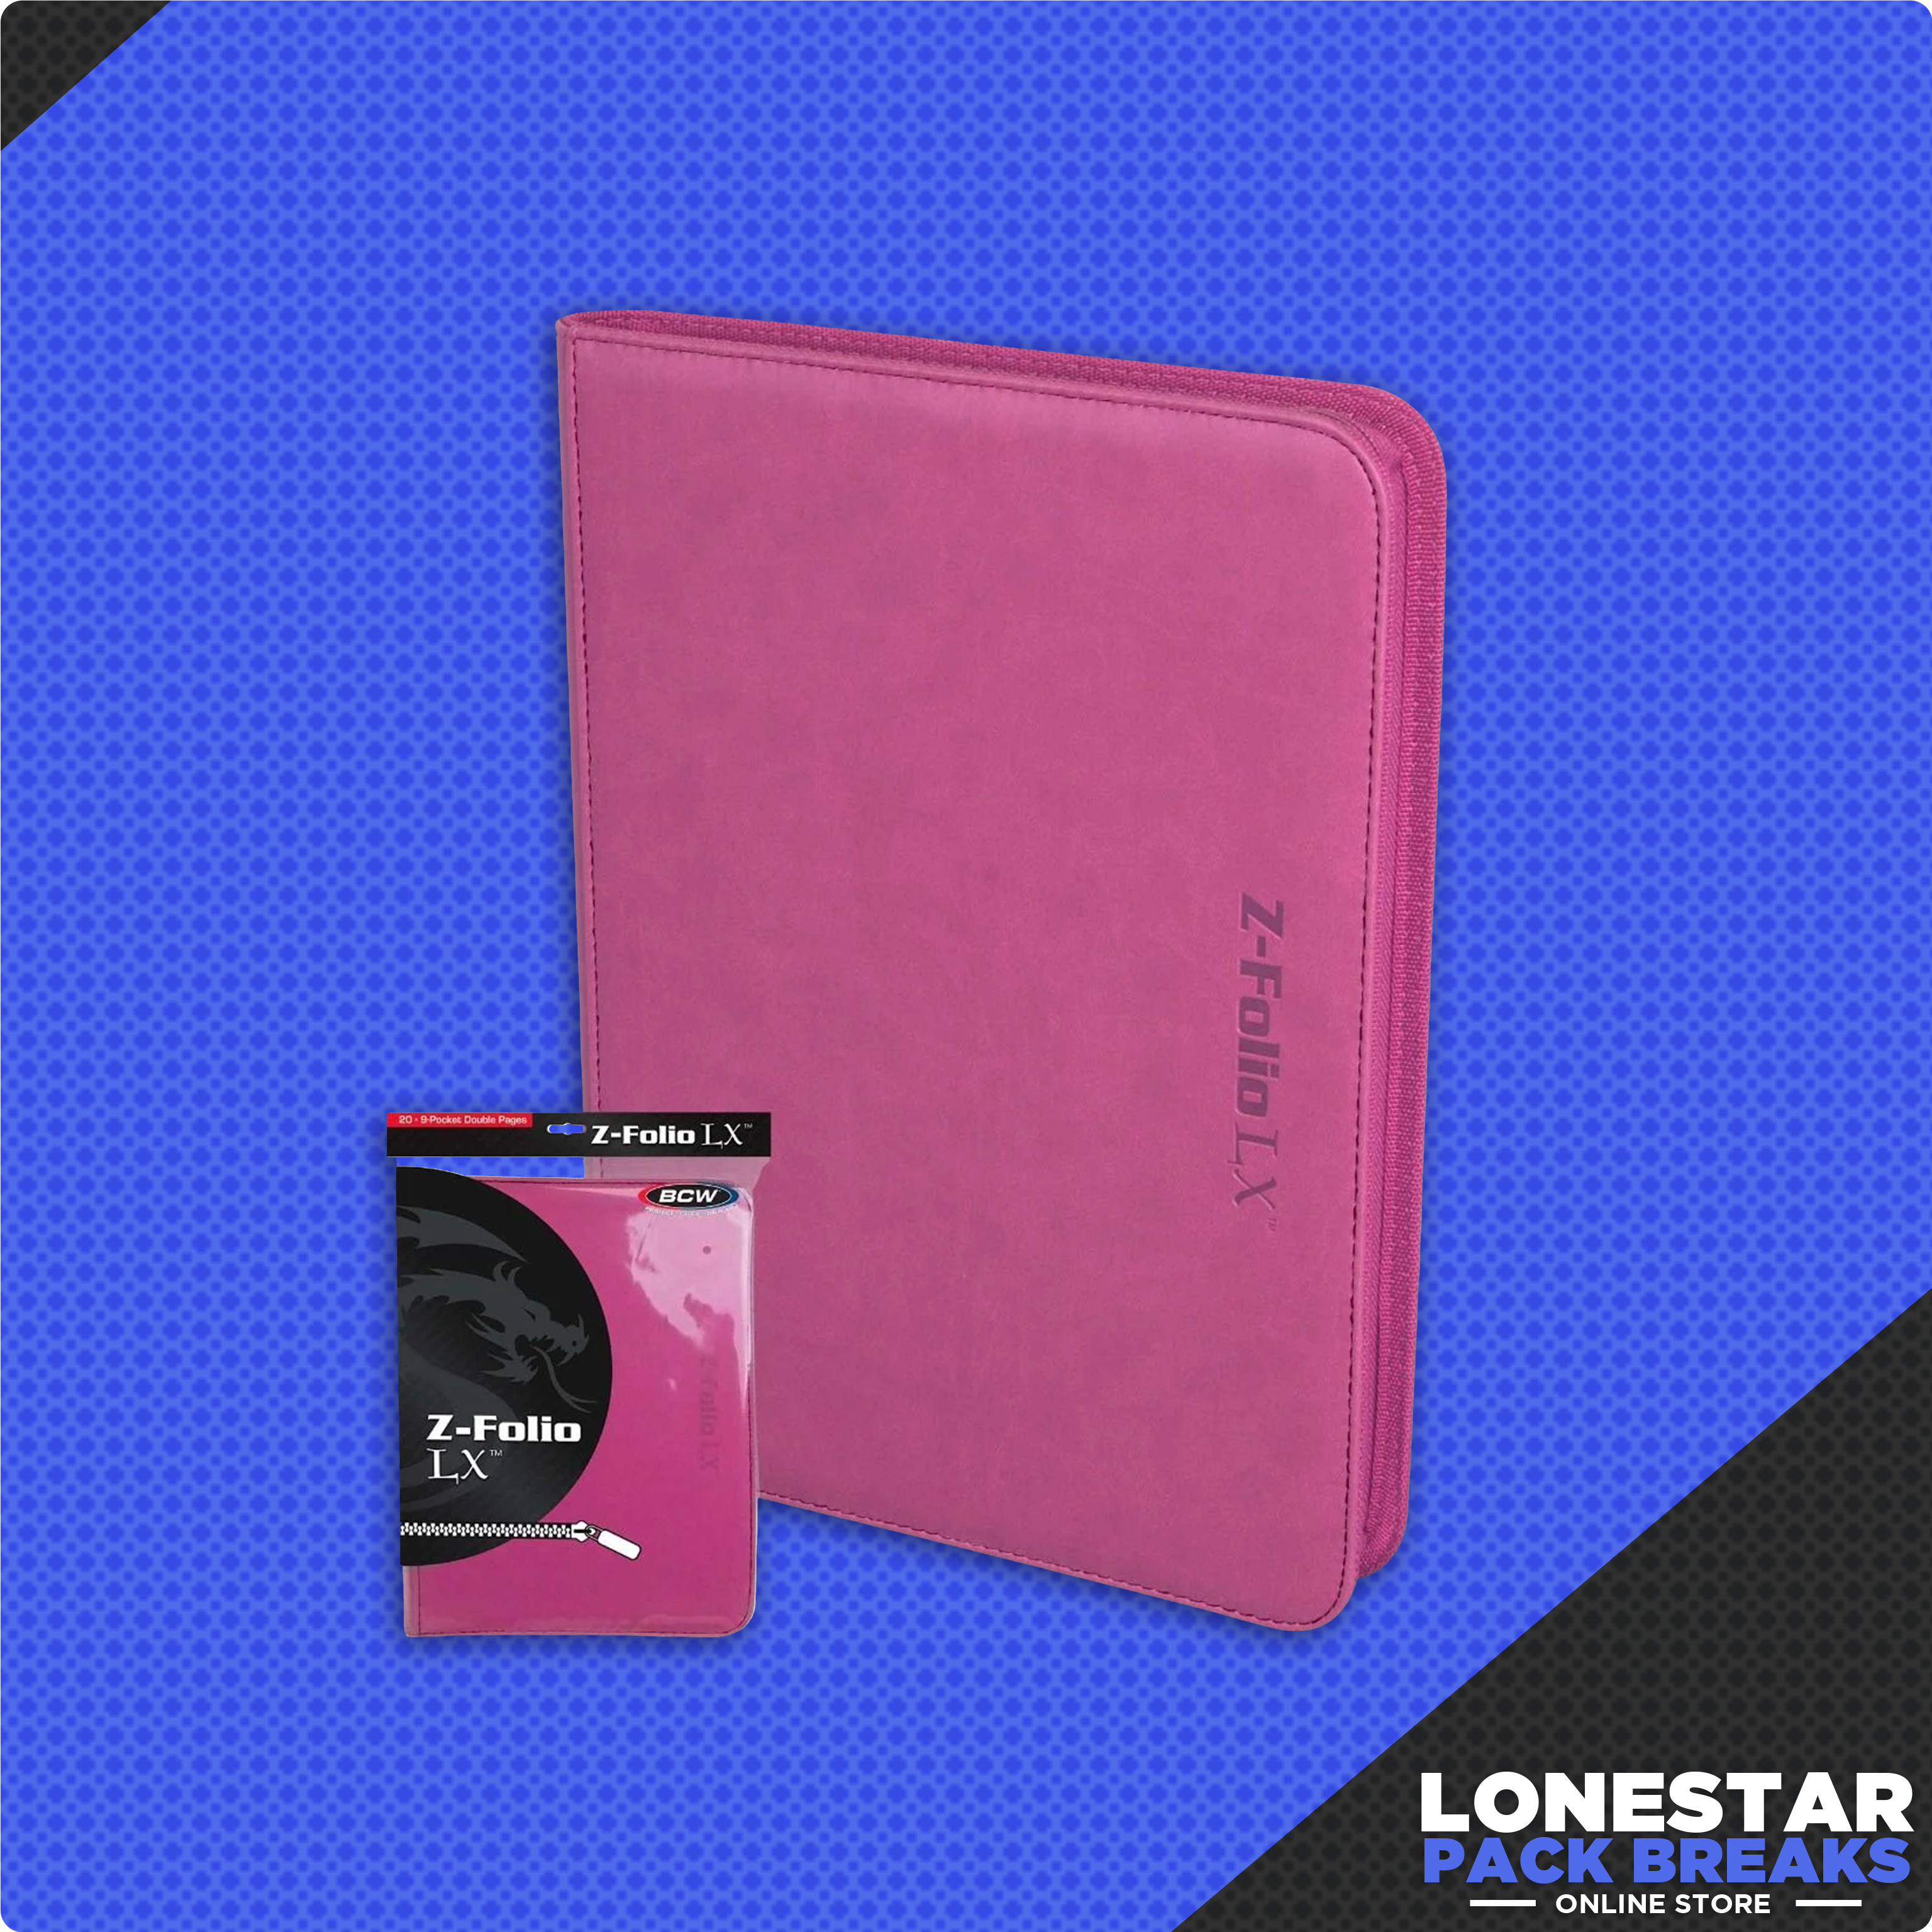 Z-Folio LX (pink) 9-Pocket